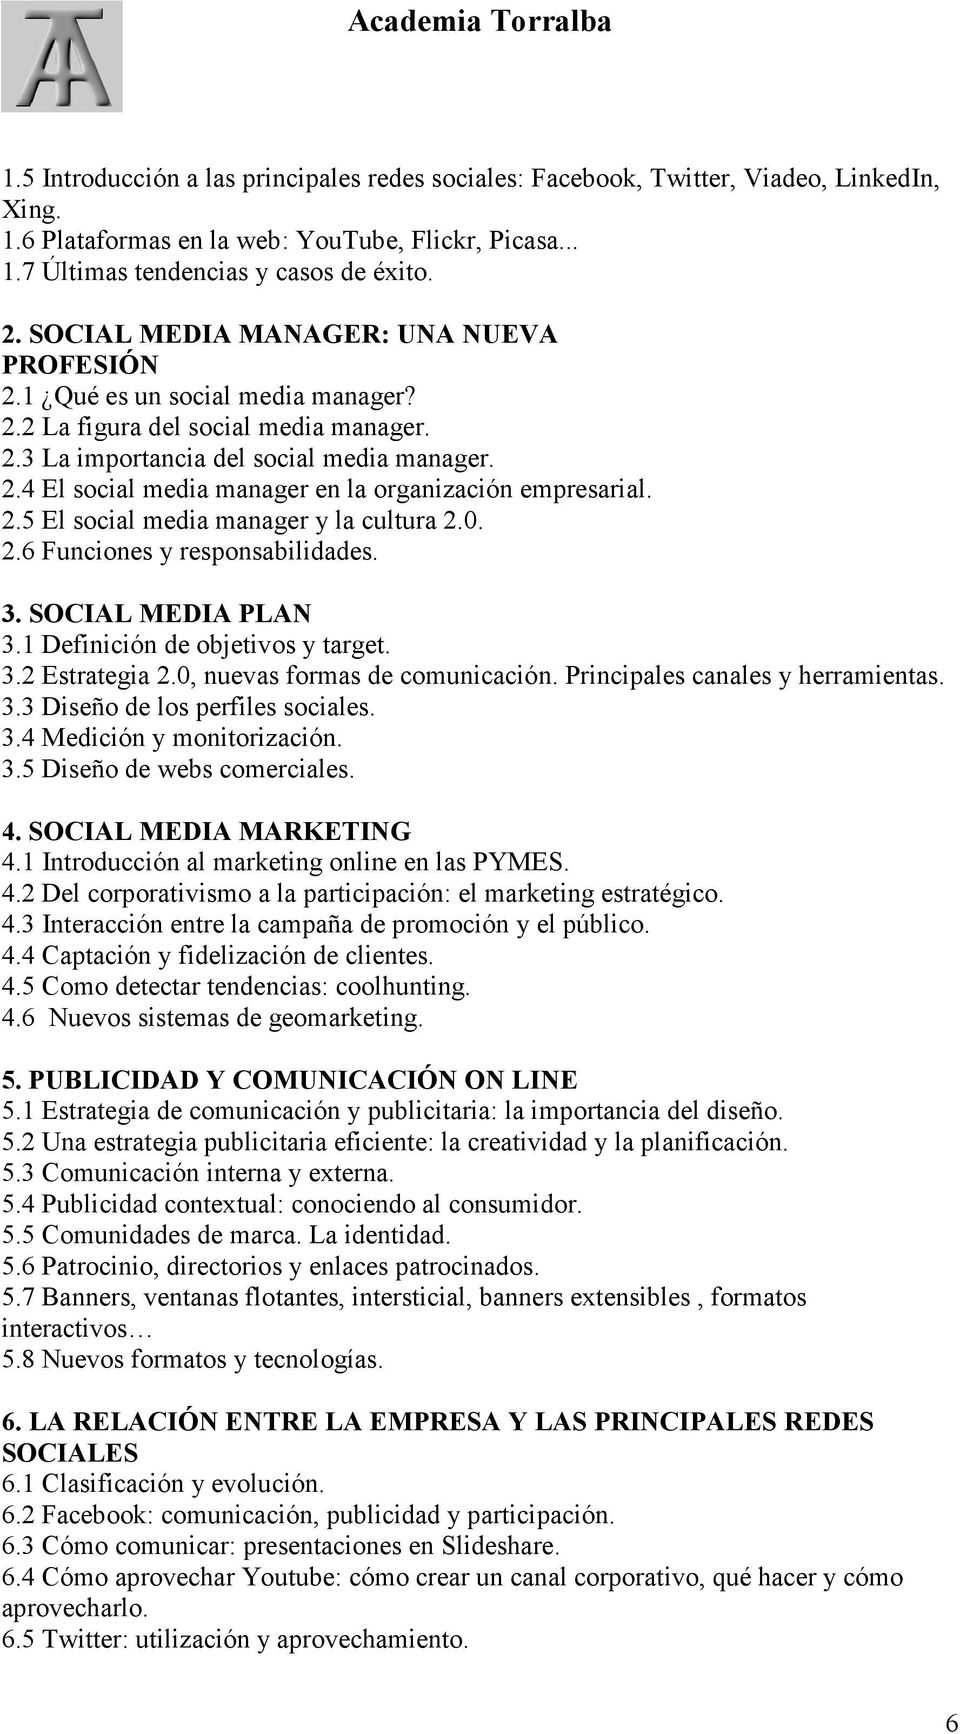 2.5 El social media manager y la cultura 2.0. 2.6 Funciones y responsabilidades. 3. SOCIAL MEDIA PLAN 3.1 Definición de objetivos y target. 3.2 Estrategia 2.0, nuevas formas de comunicación.